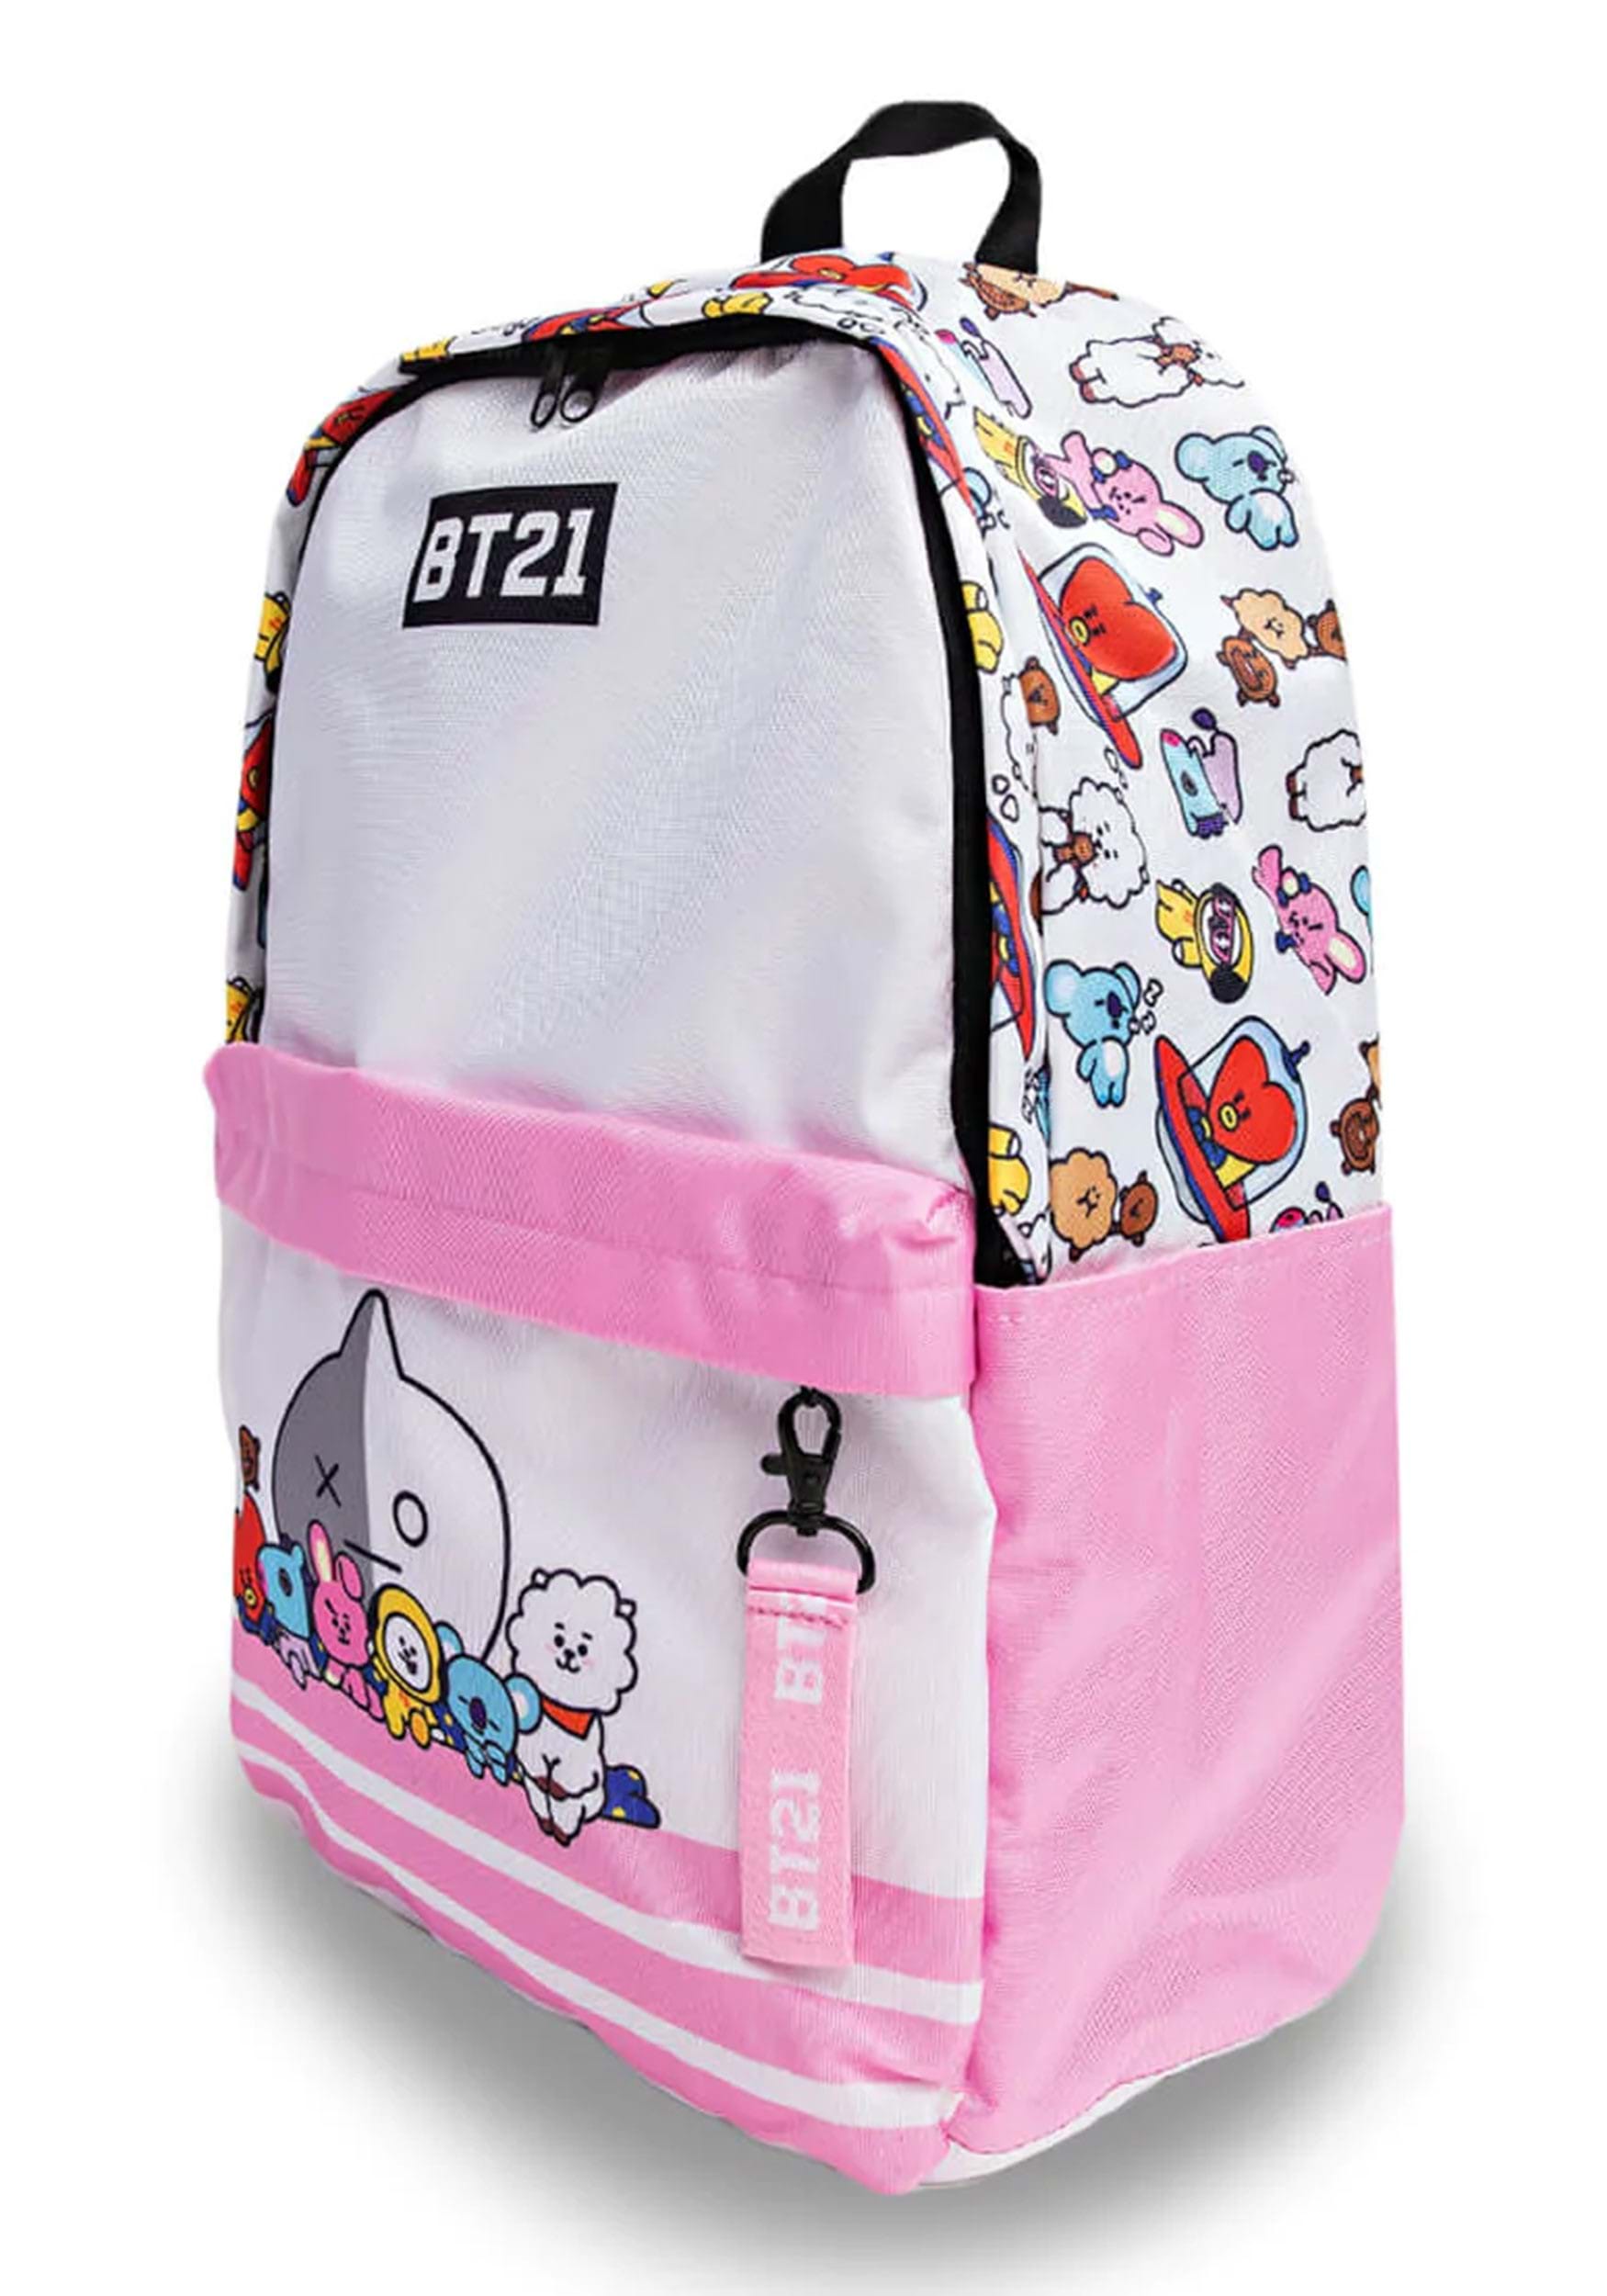 Bts Backpacks / School Bags / Boys Bags / Girls Bags / Character